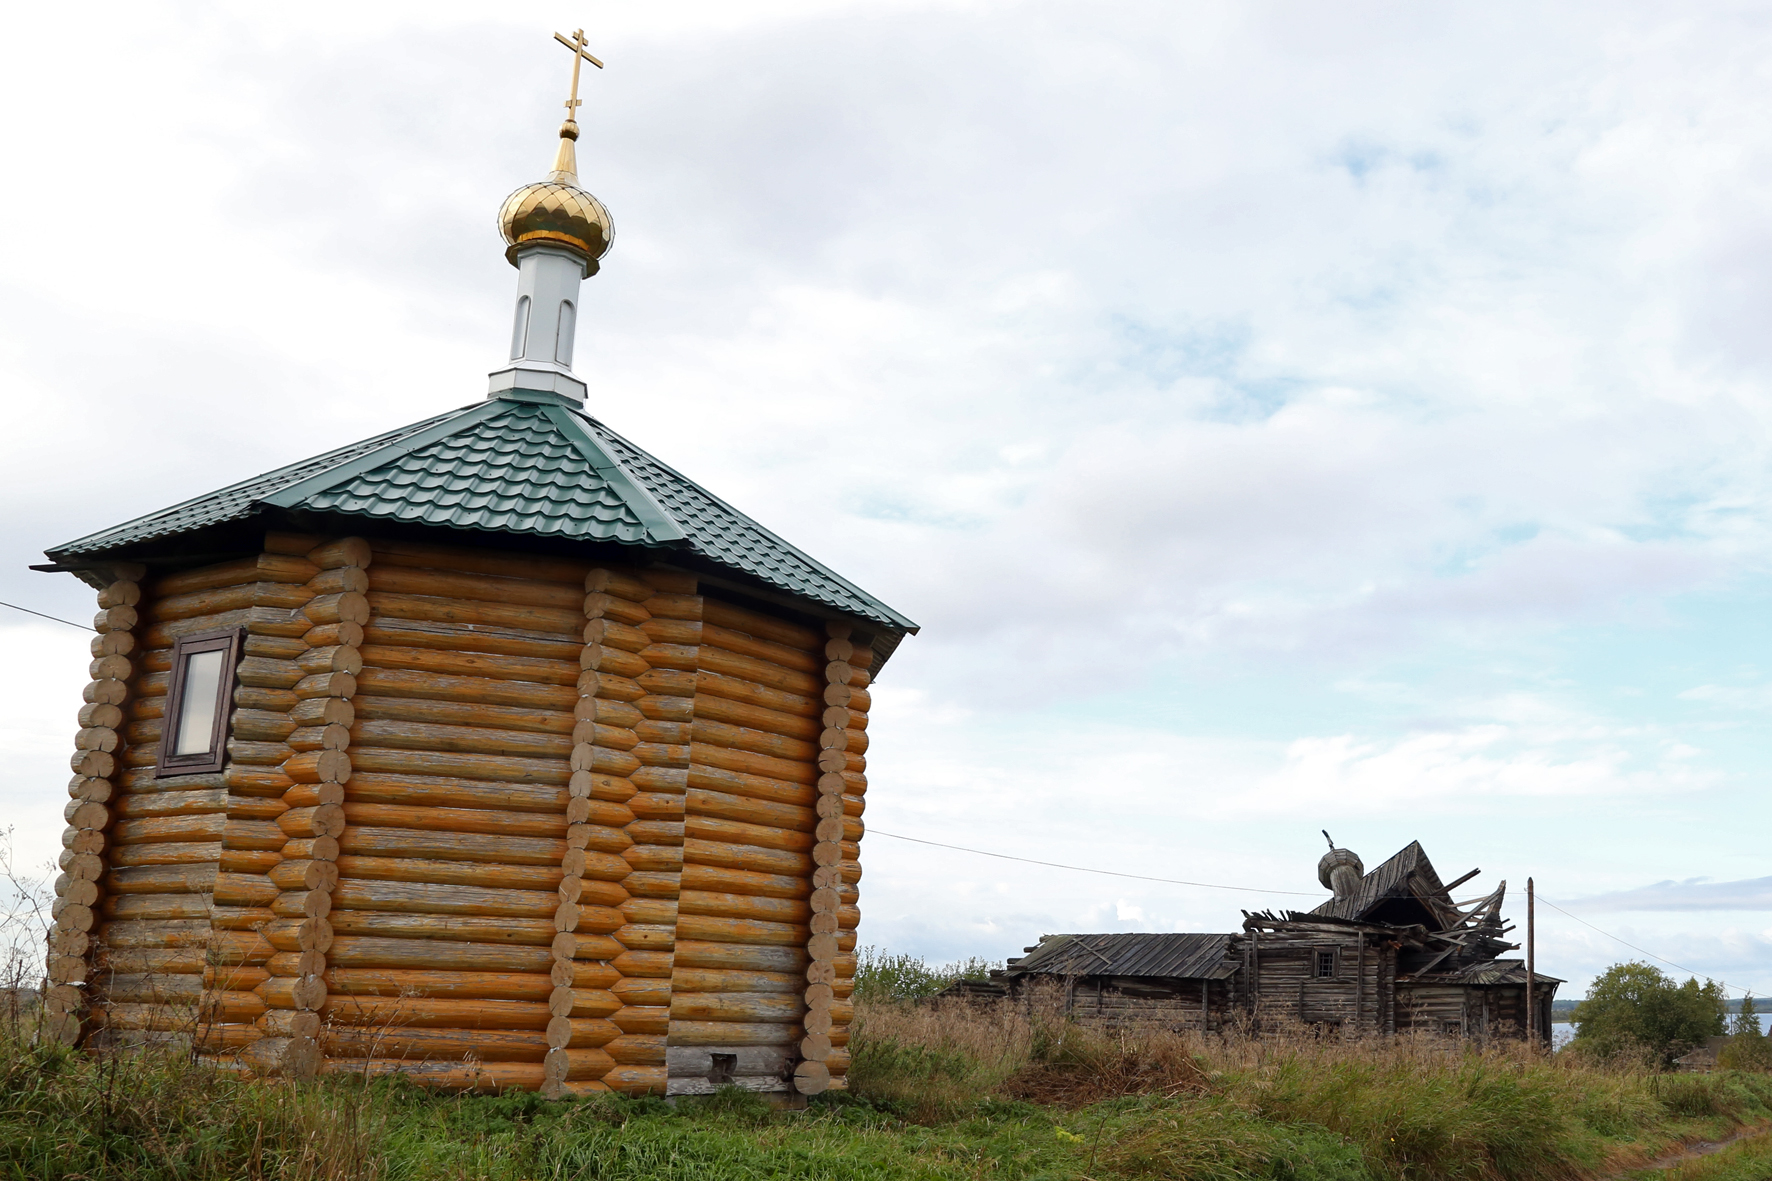 Деревня Чухчерема. Новая часовня на фоне старой разрушенной церкви Василия Блаженного